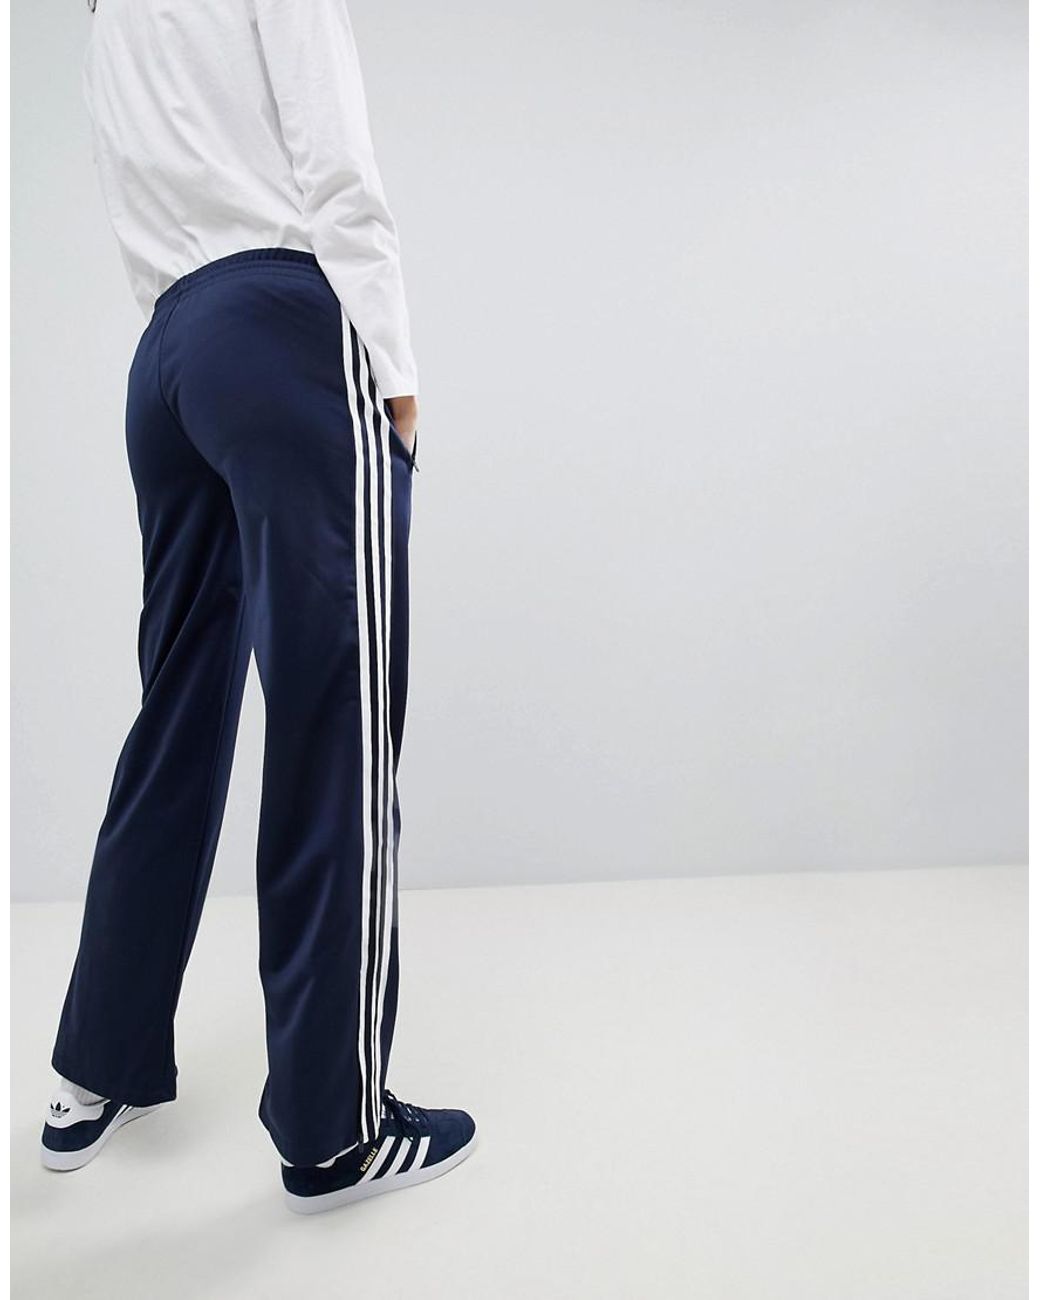 adidas Originals Originals Adicolor Wide Leg Sailor Pants In Navy